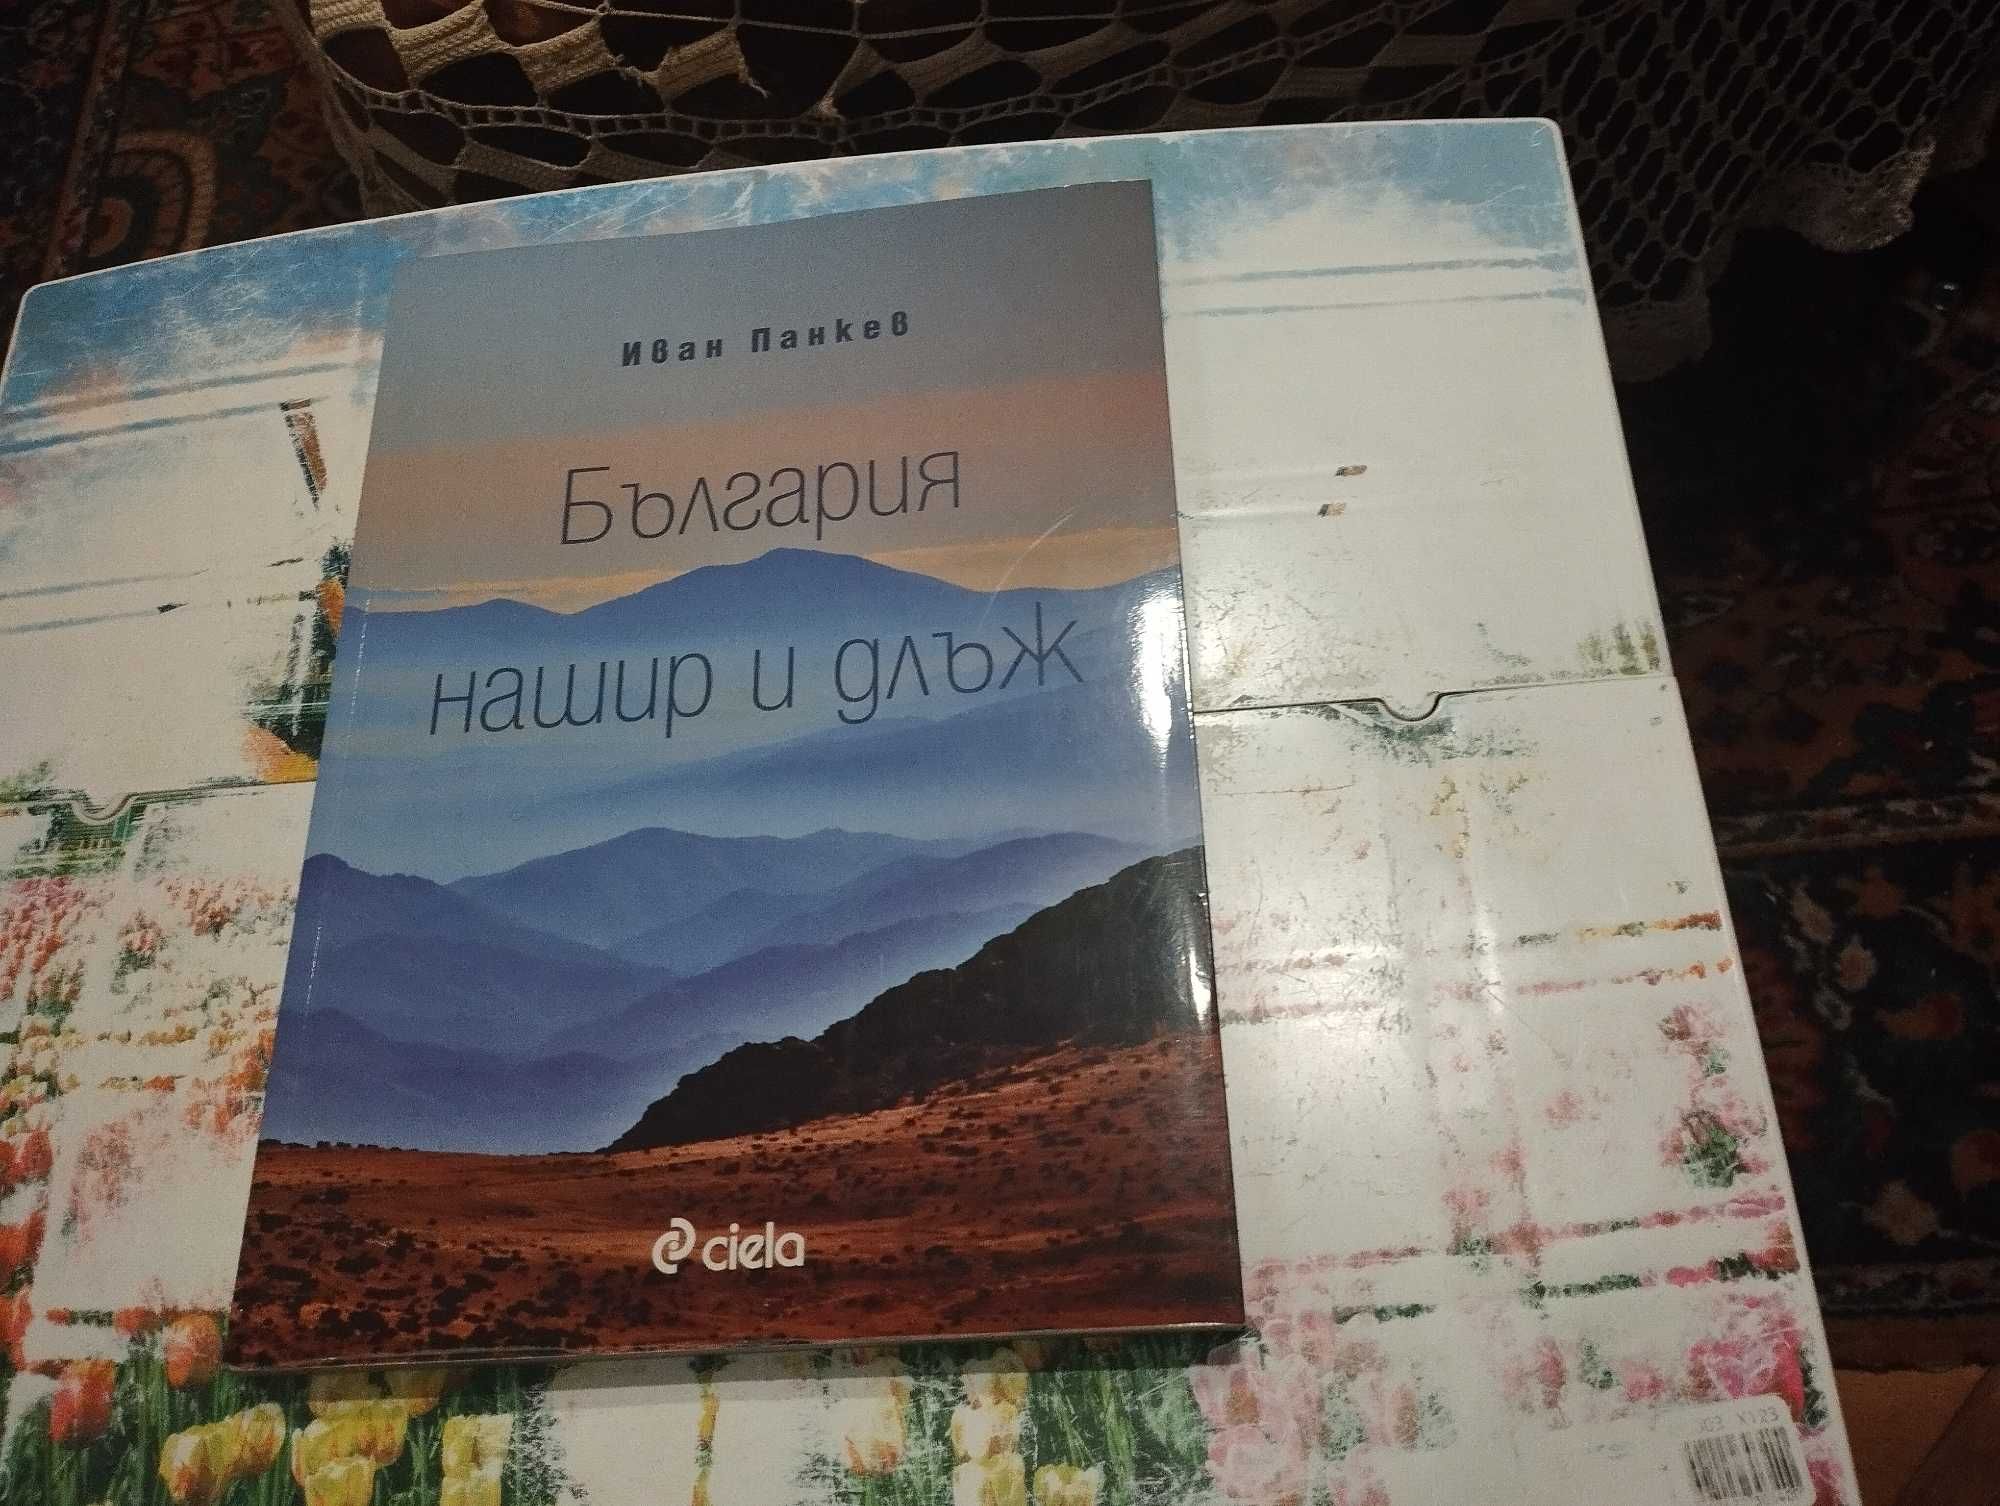 Книга: България нашир и длъж от Иван Панкев